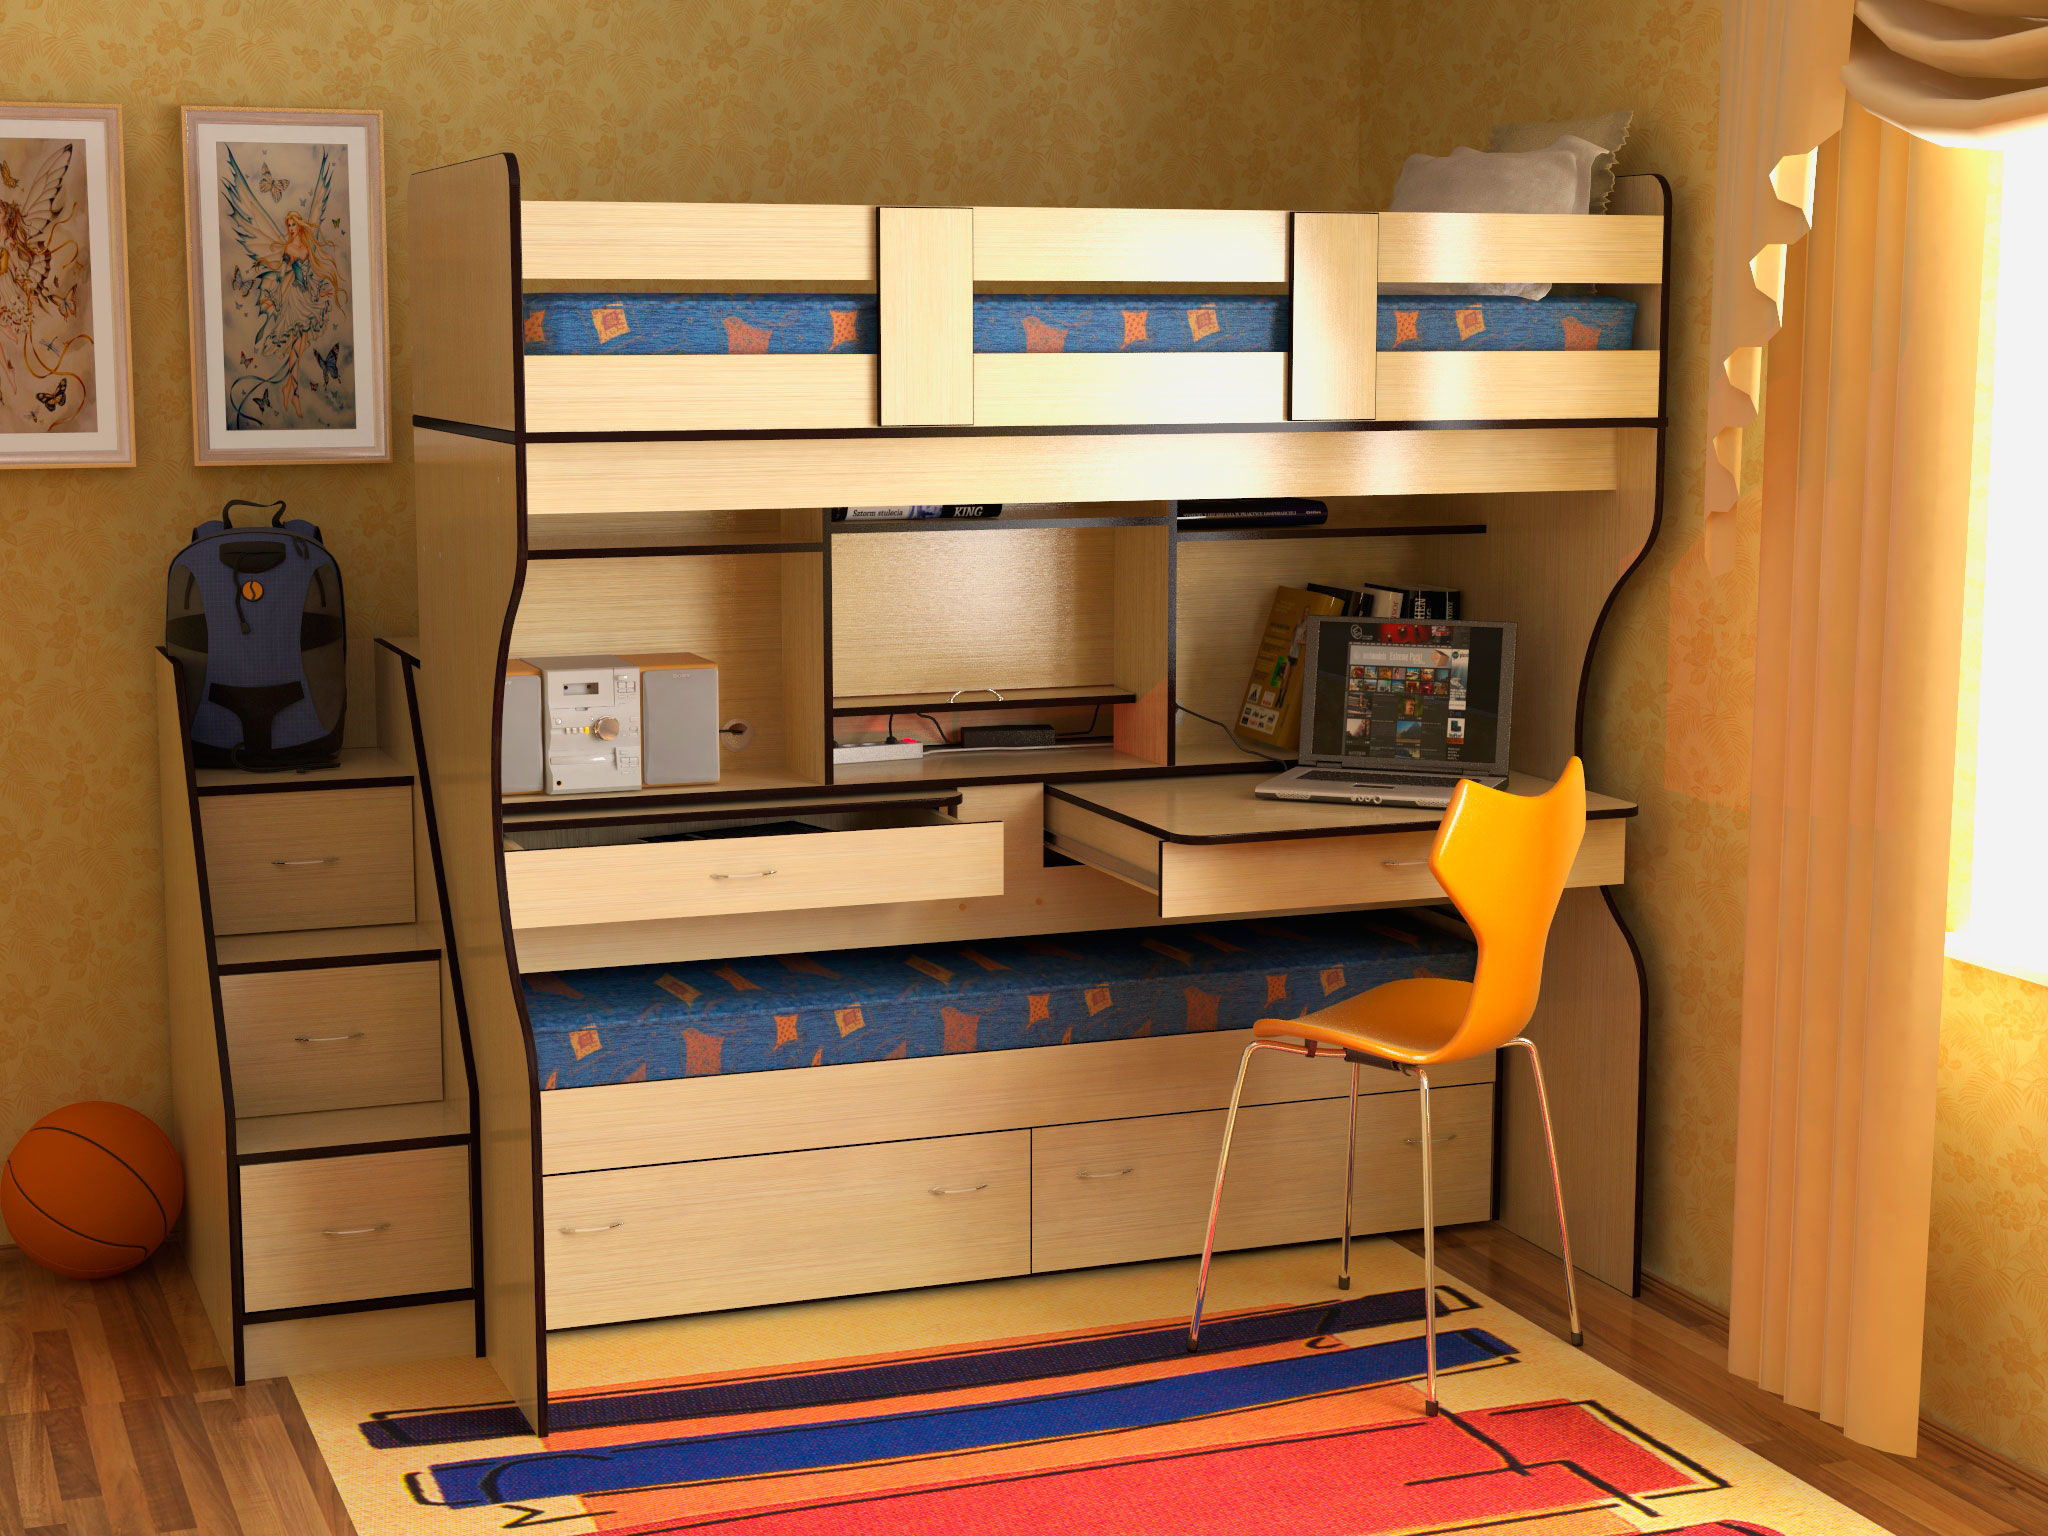 Двухъярусная кровать для детей со столом и шкафом для двоих